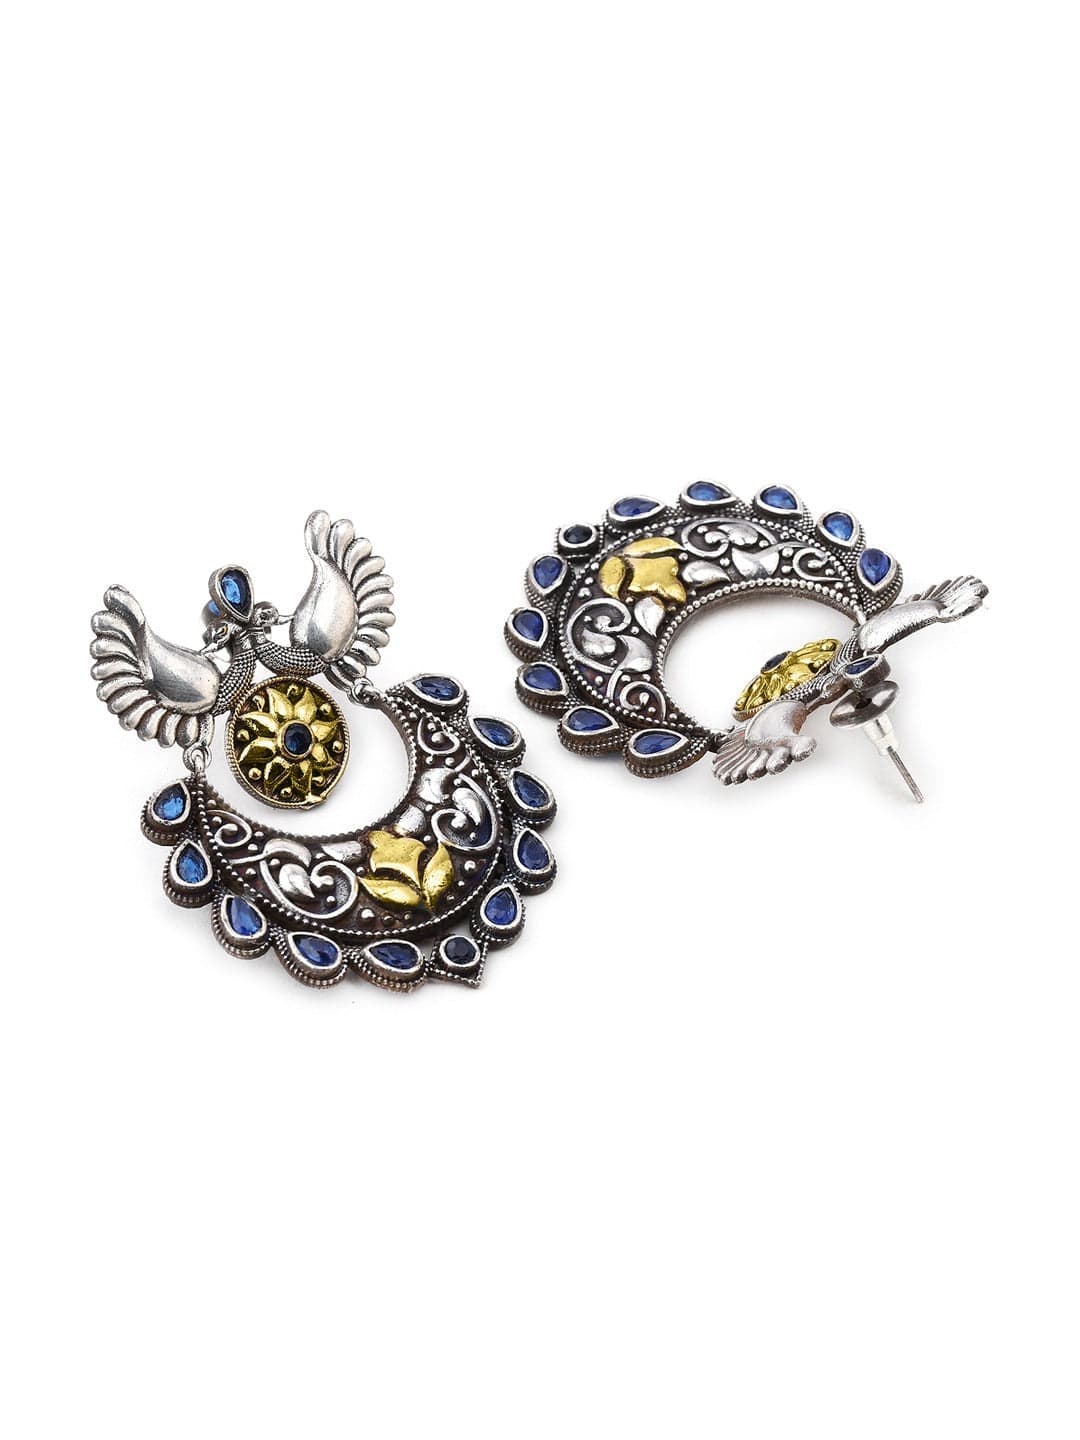 Rubans Silver-Toned Peacock Shaped Chandbalis Earrings